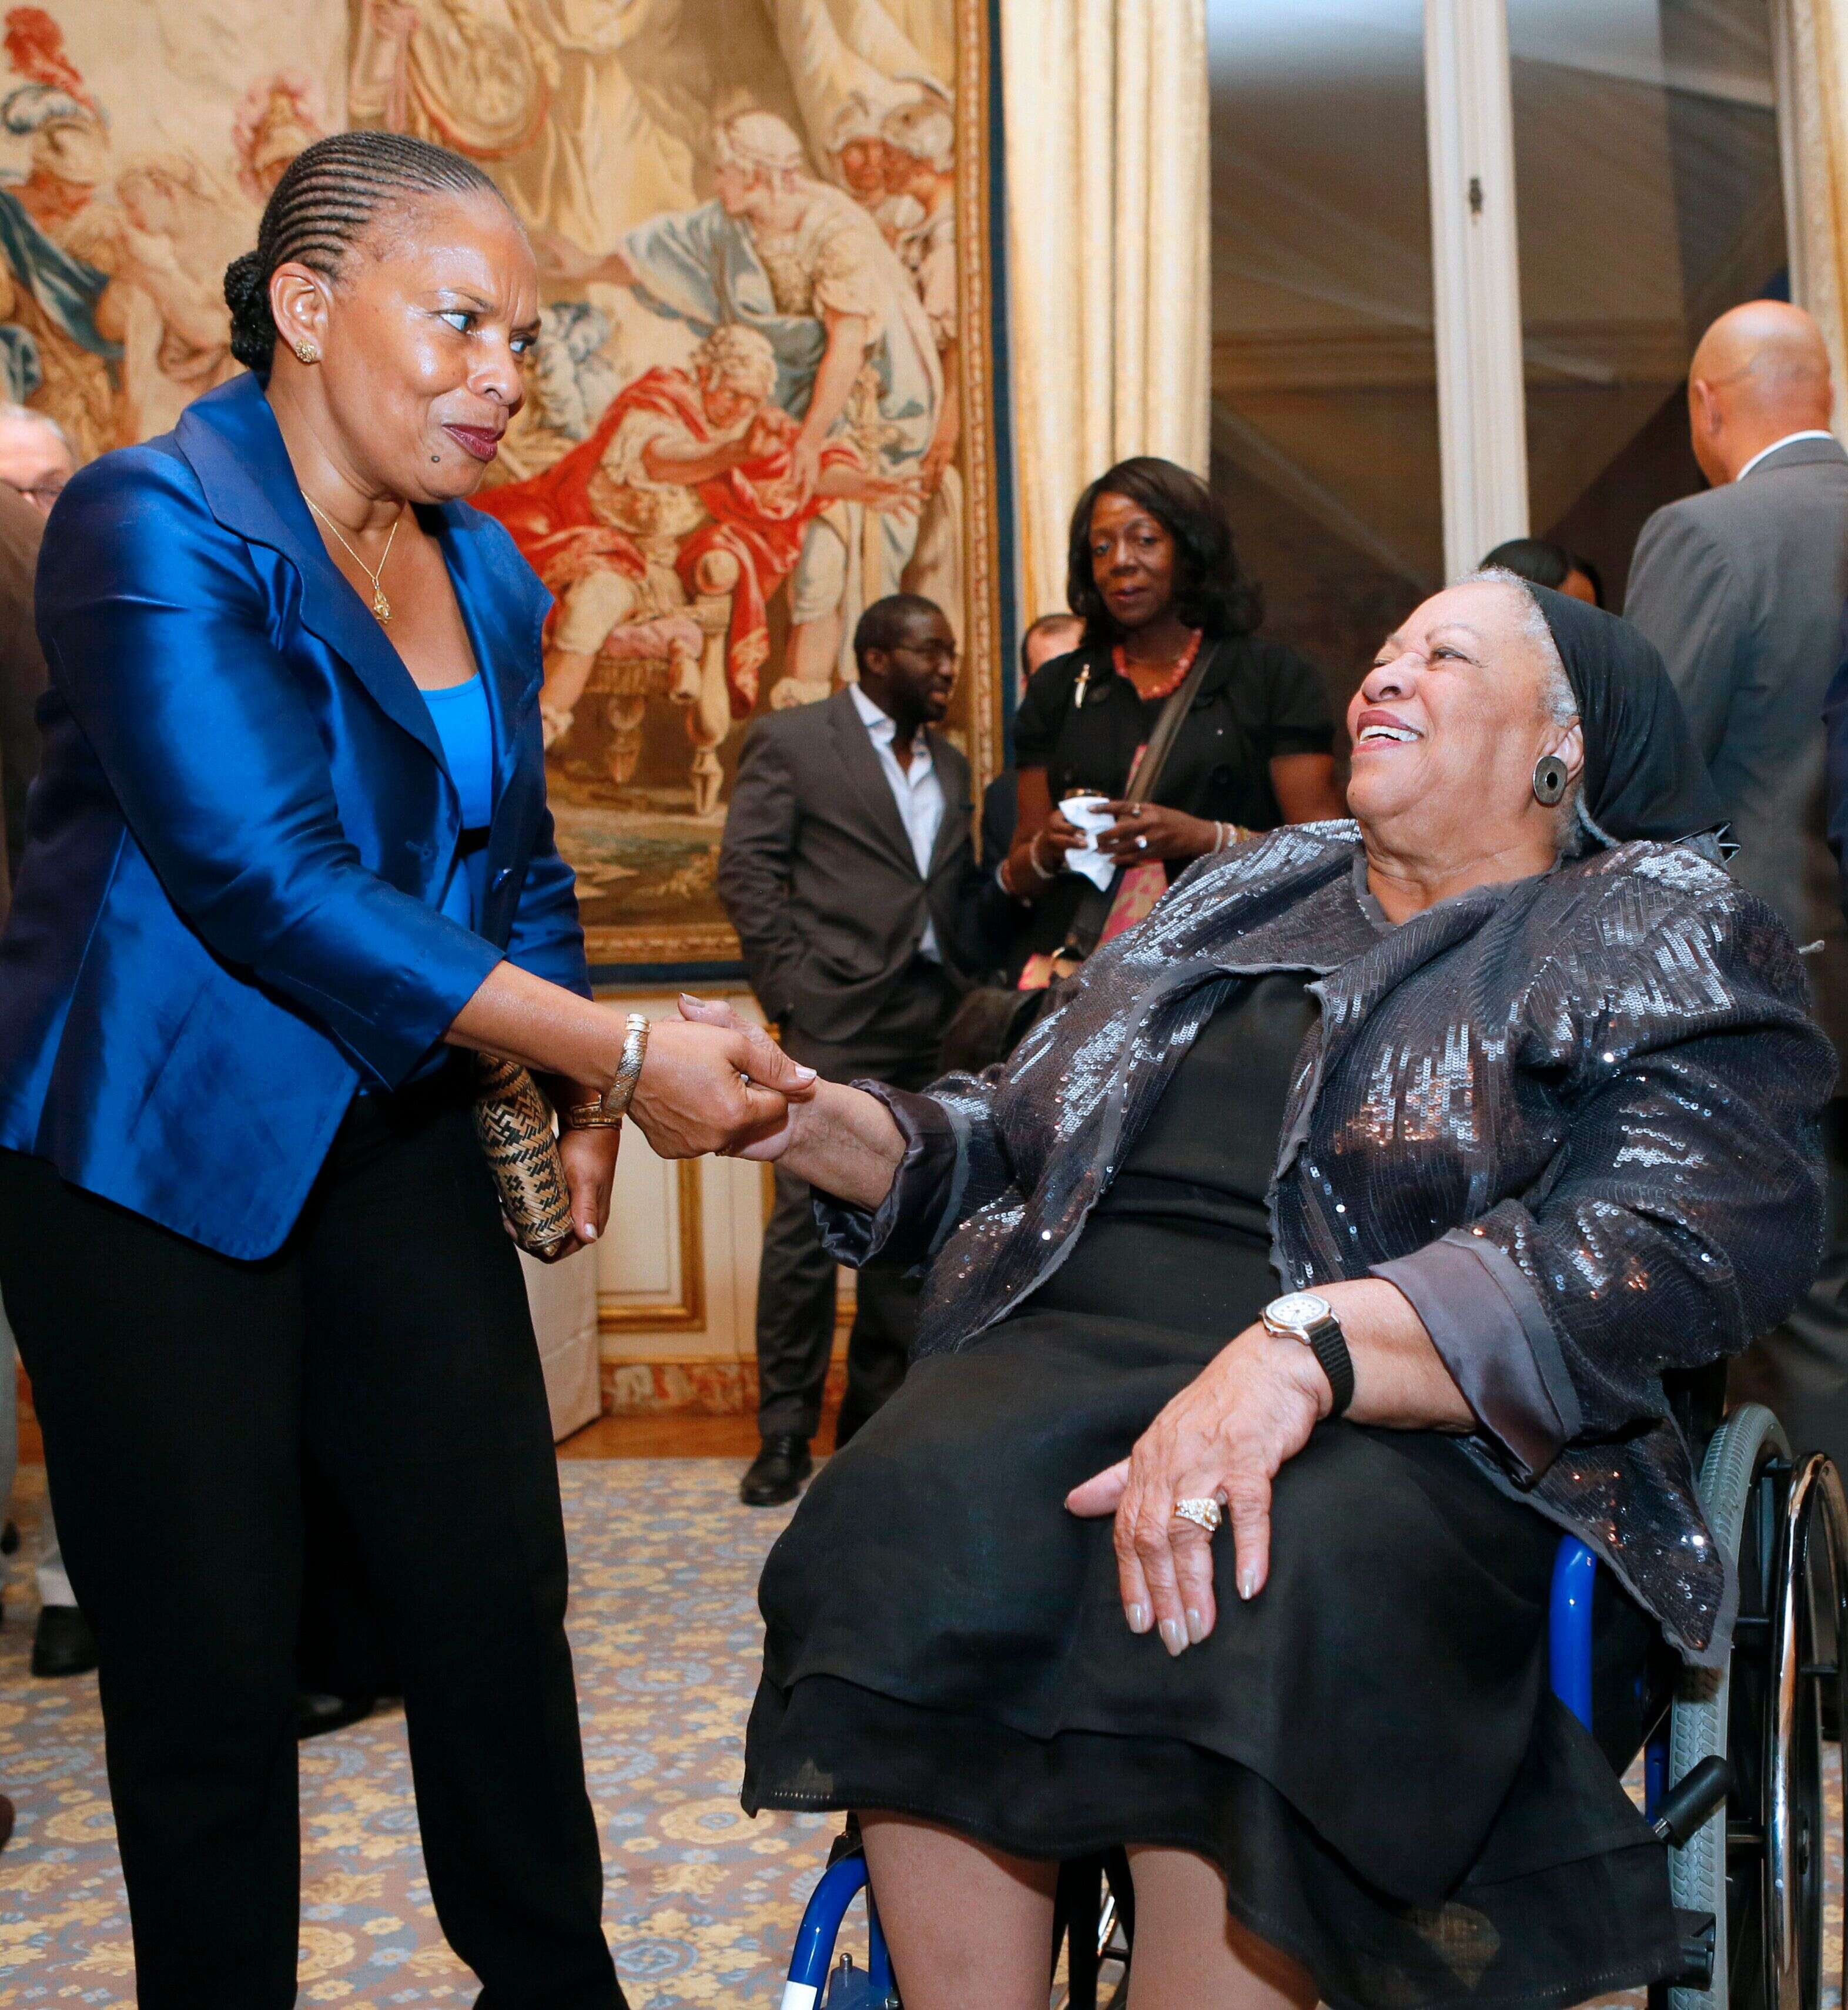 La ministre de la justice Christiane Taubira en présence de l'écrivaine américaine Toni Morrison, prix Nobel de littérature en 1993, lors d'une réception organisée par l'ambassadeur américain à Paris, dans le cadre du 10ème festival culturel américain, le 21 septembre 2012.